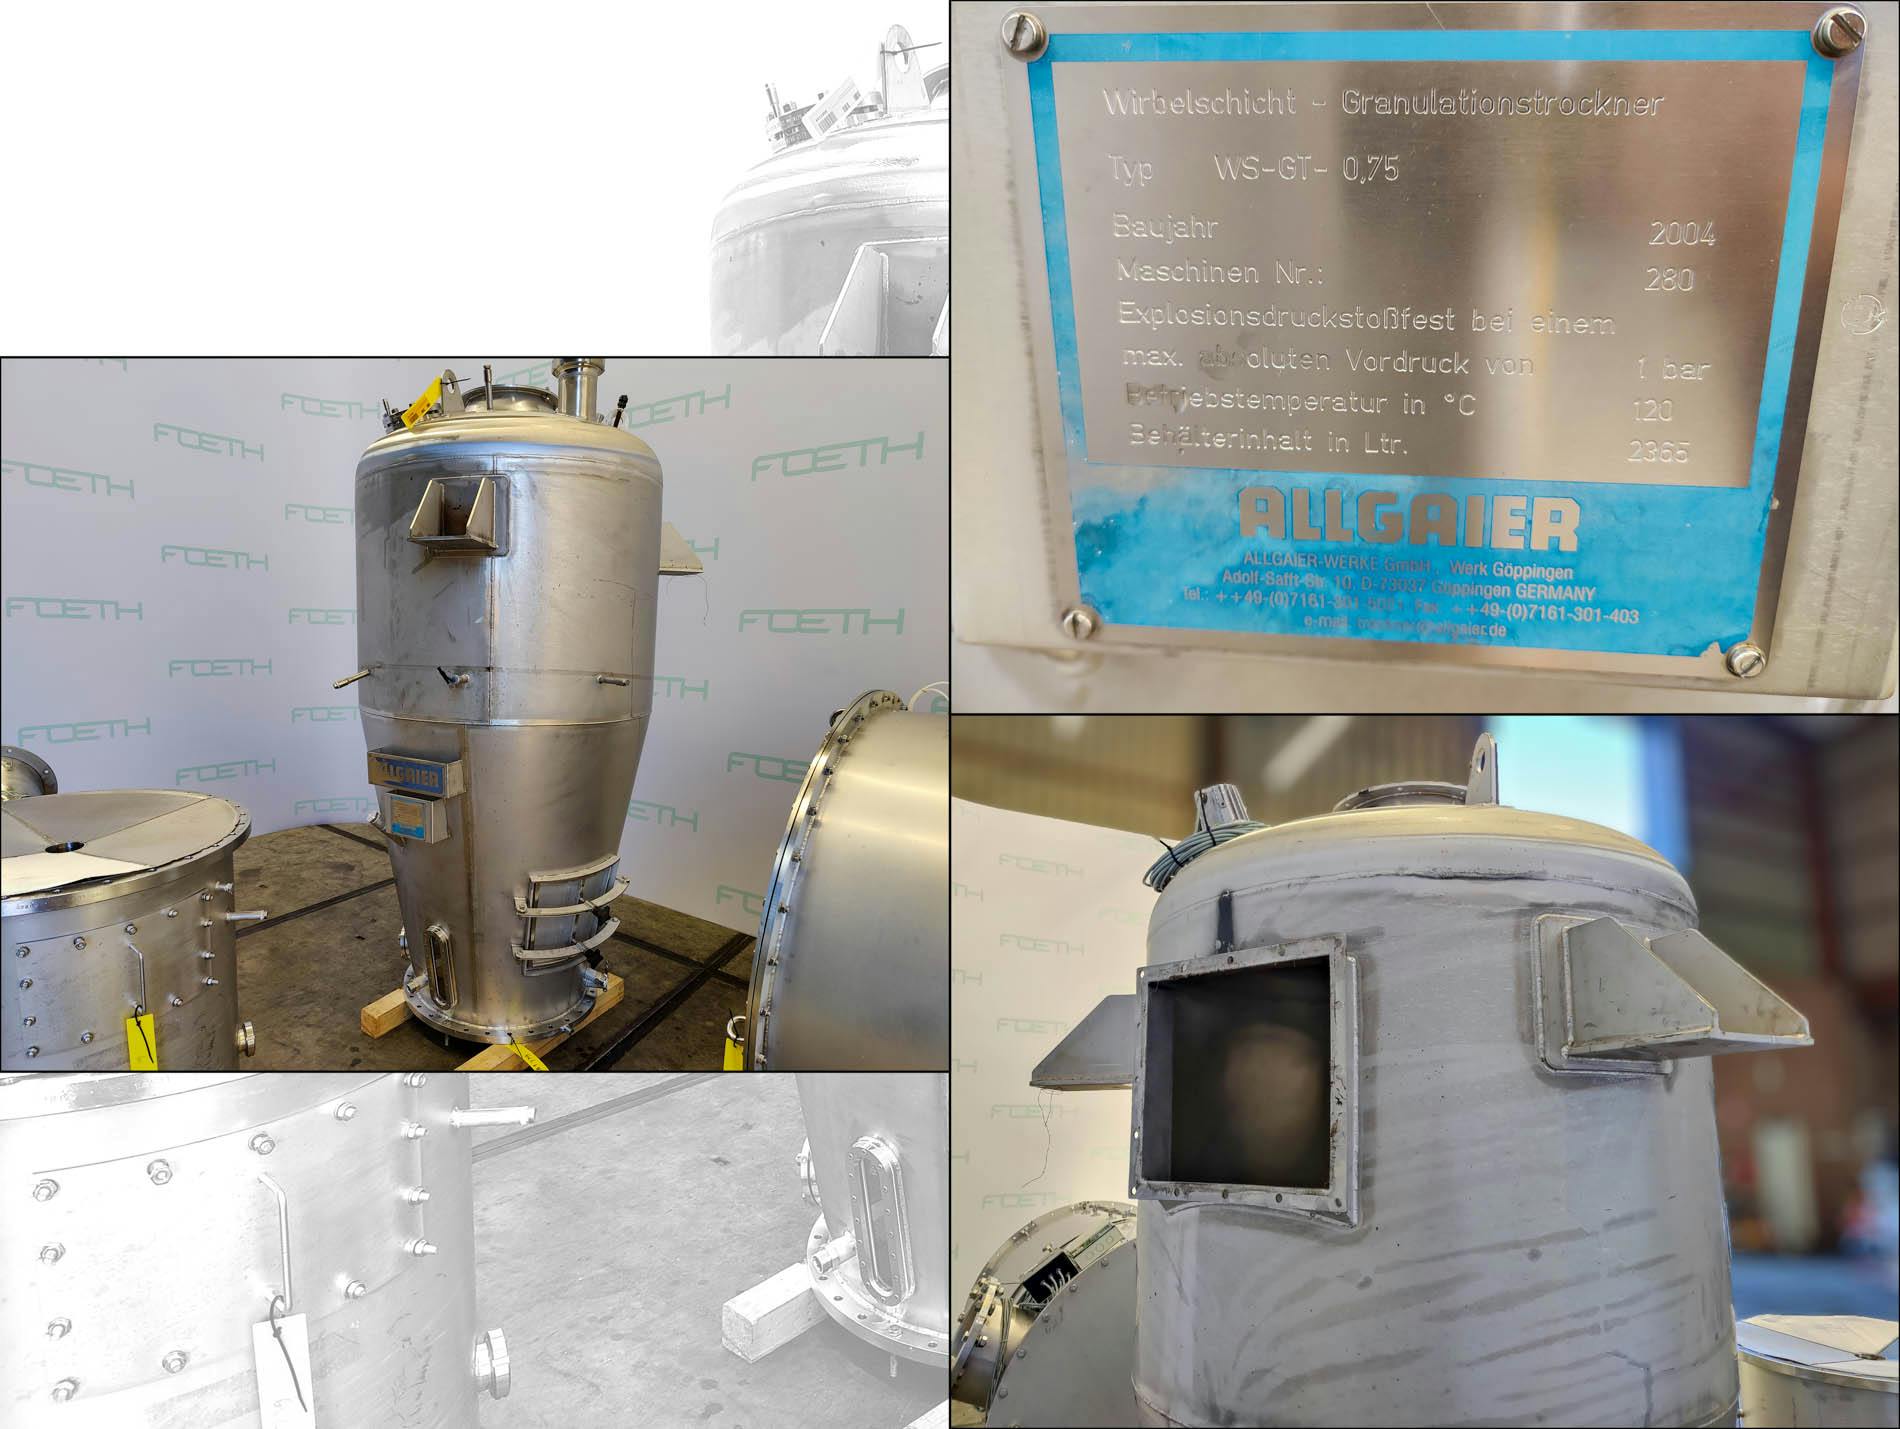 Allgaier Fluidized Bed Spray Granulators WS-GT-0,75 - Сушилка c кипящим слоем непрерывного действия - image 5